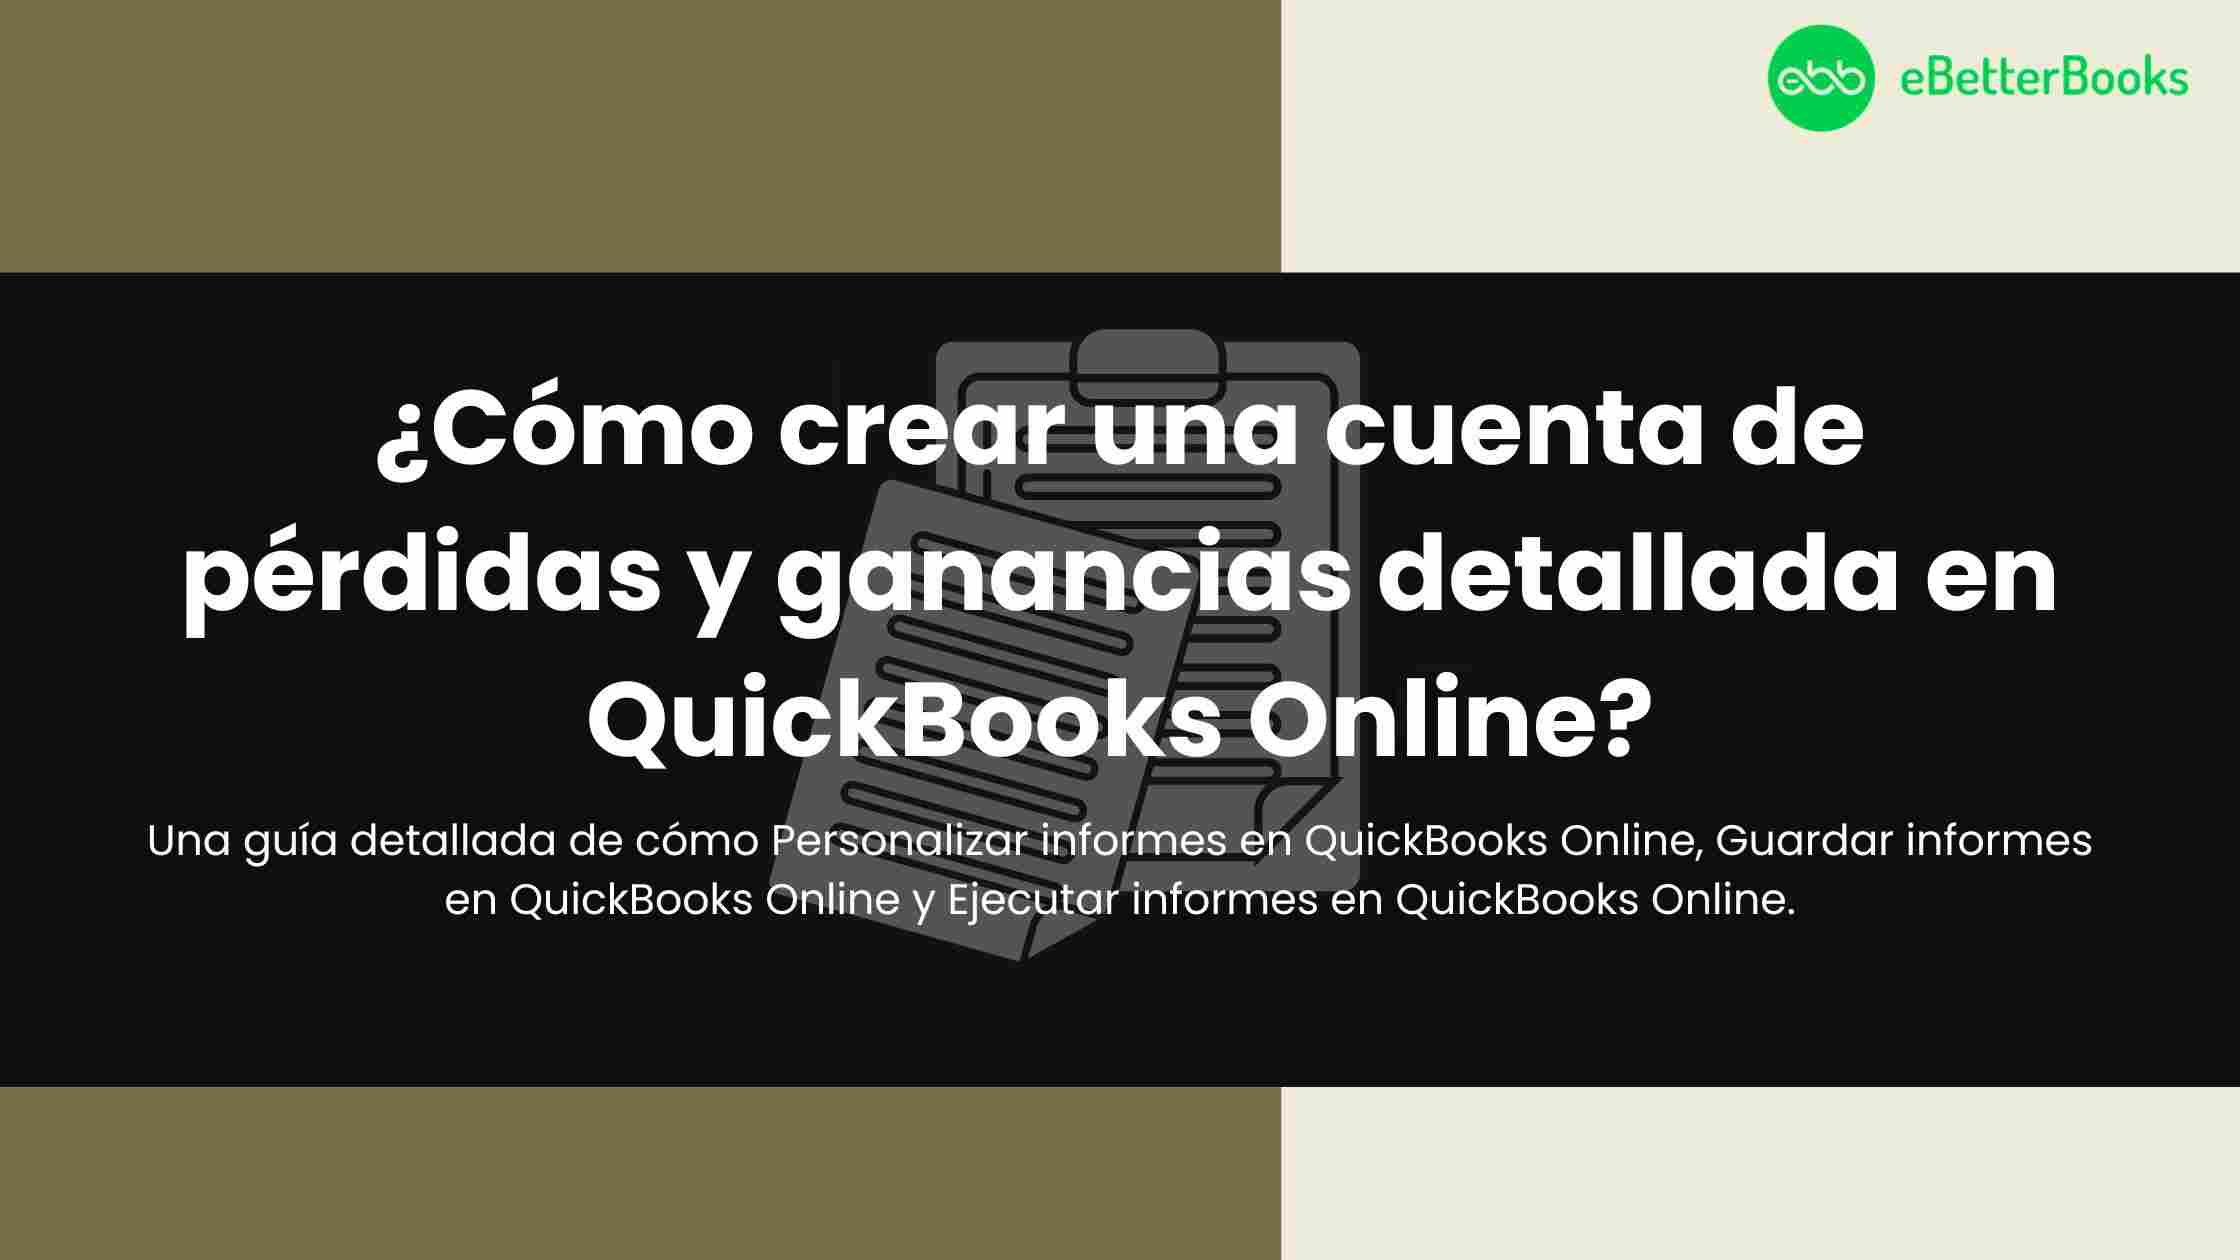 ¿Cómo crear una cuenta de pérdidas y ganancias detallada en QuickBooks Online?